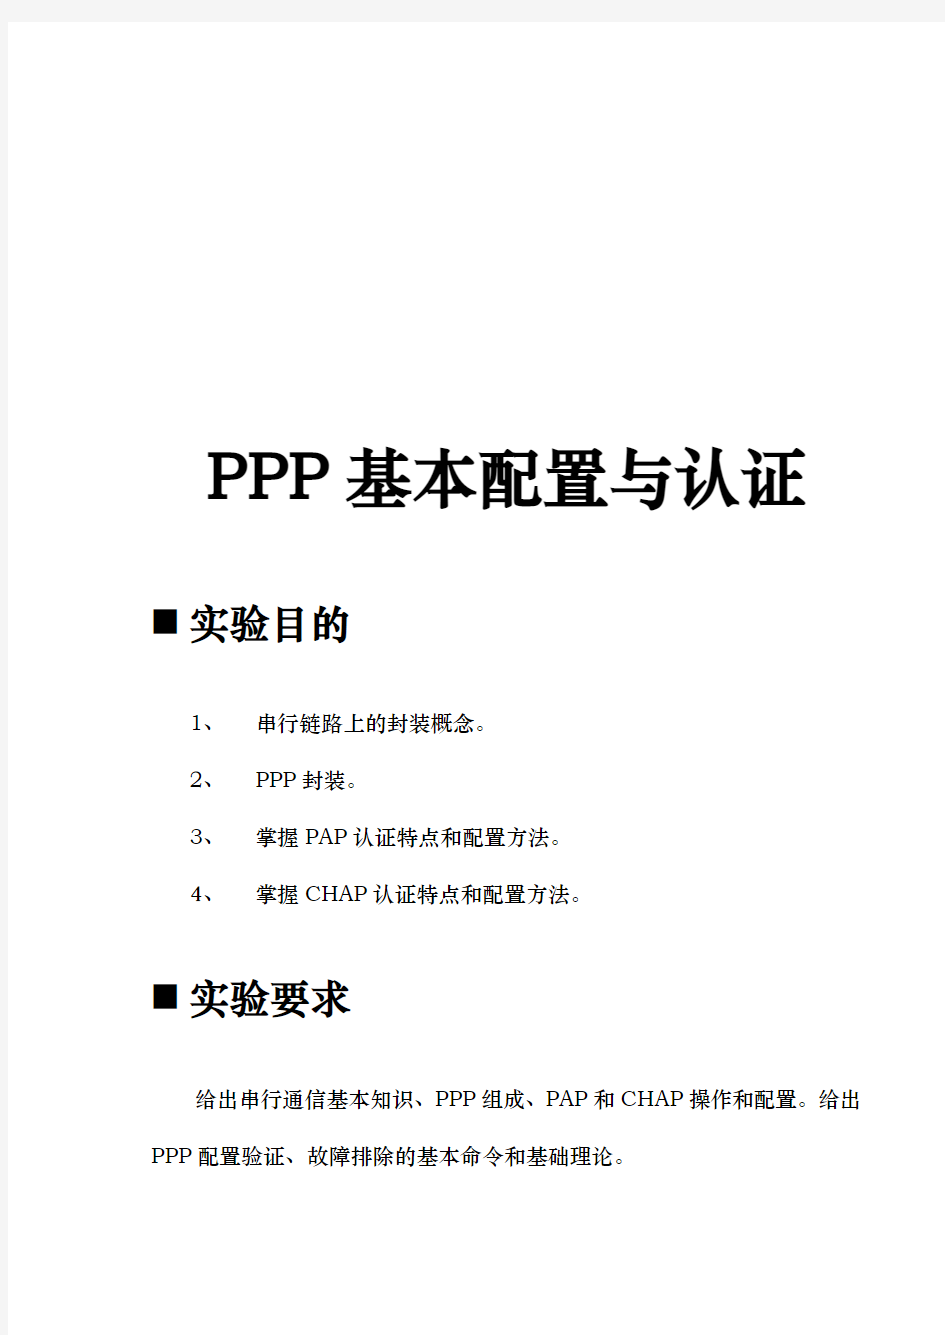 PPP基本配置与认证概述